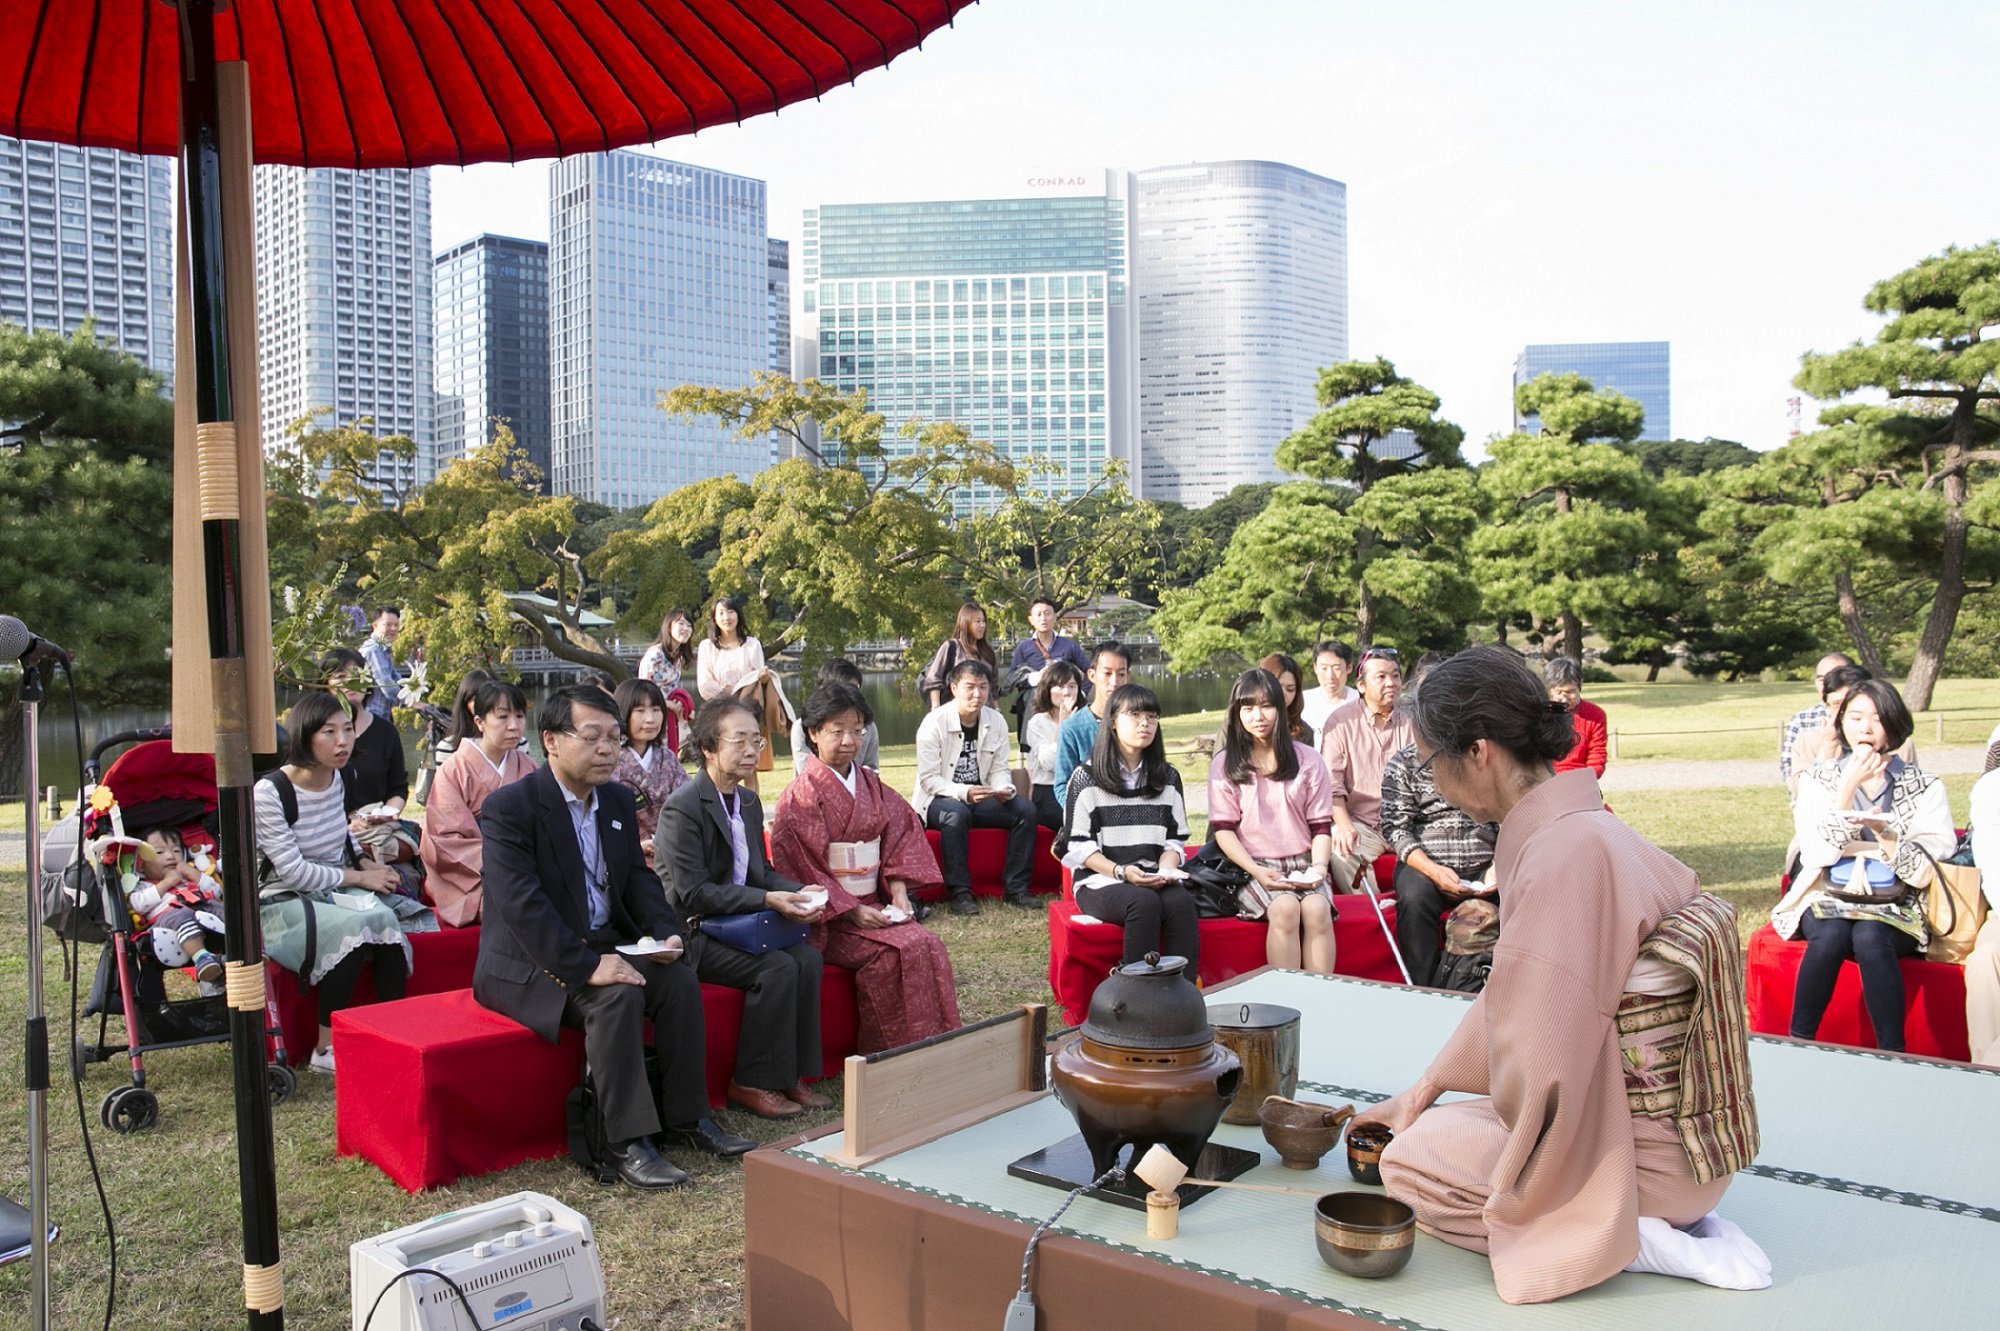 حفل الشاى اليابانى .. تحدى الزمان بقوة "ماتشا" و"تشادو"